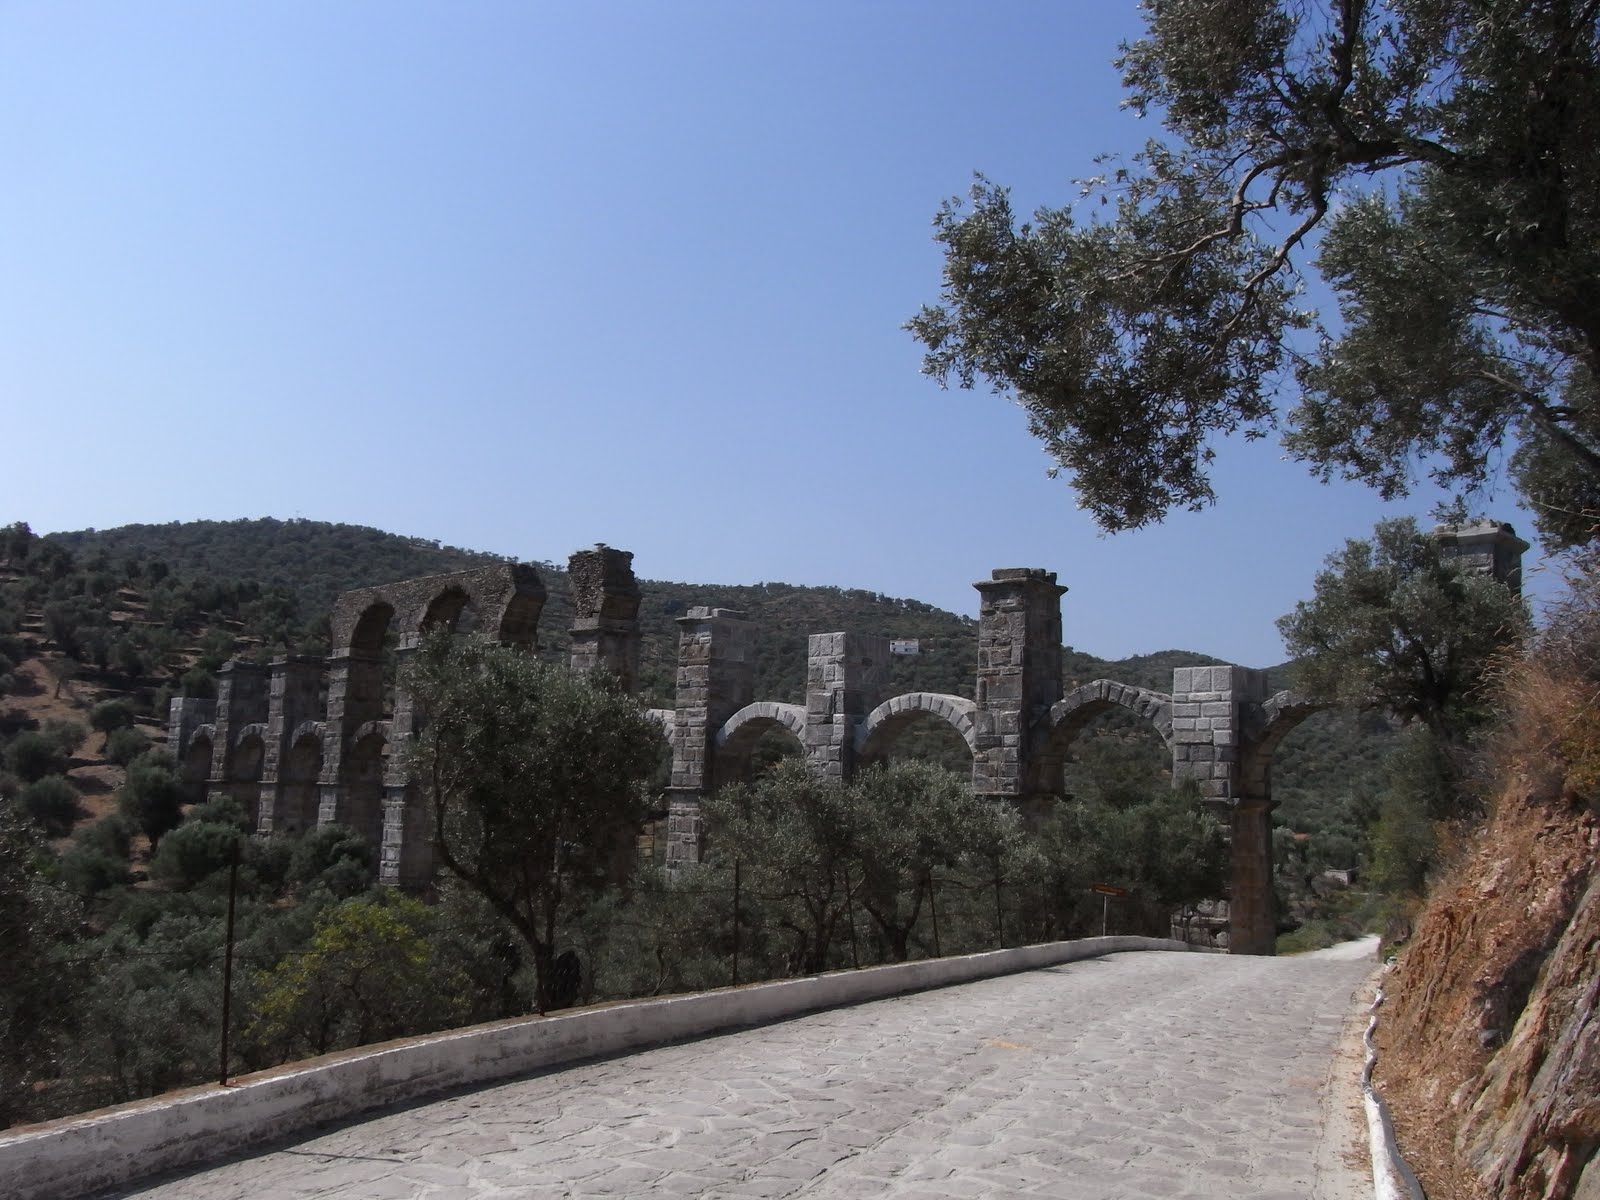 The Roman Aqueduct at Moria